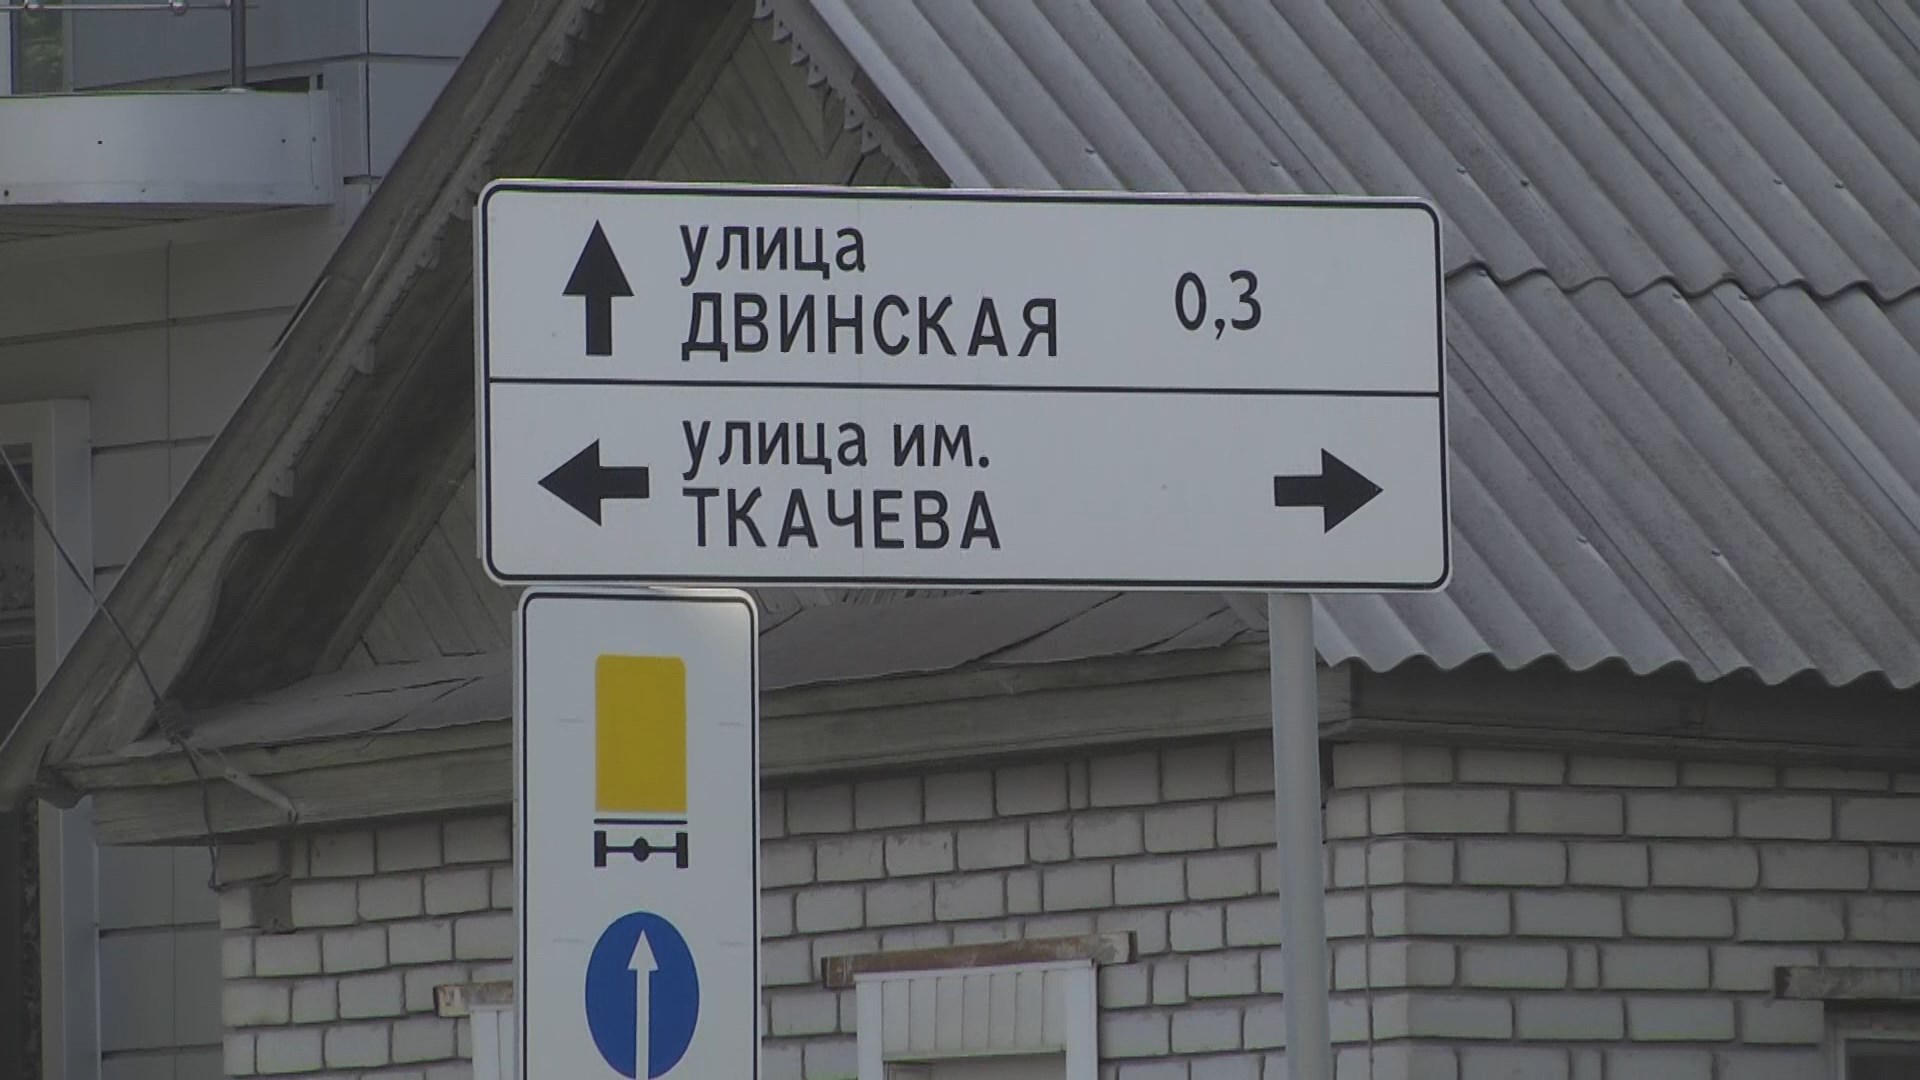 В Волгограде запретили повороты налево на улицы Ткачева и Двинскую